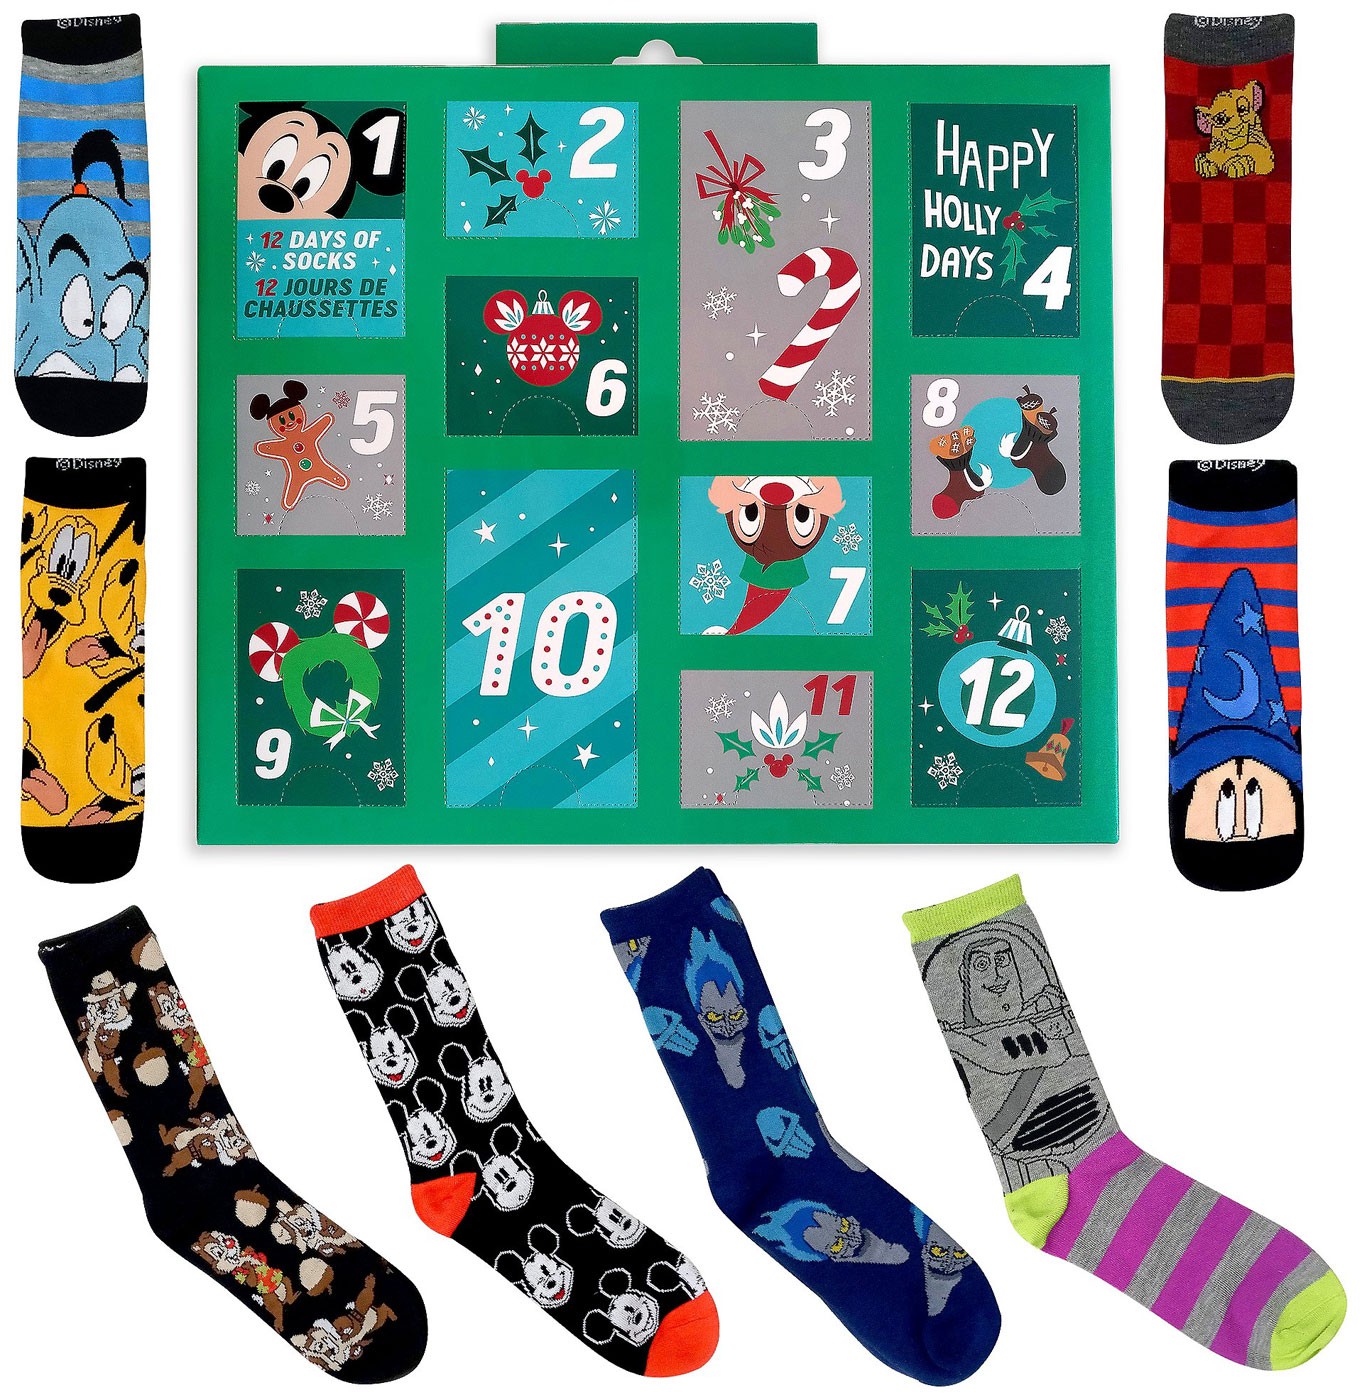 12 Days of Socks 2020 Holiday Advent Sock Calendar for Men eBay